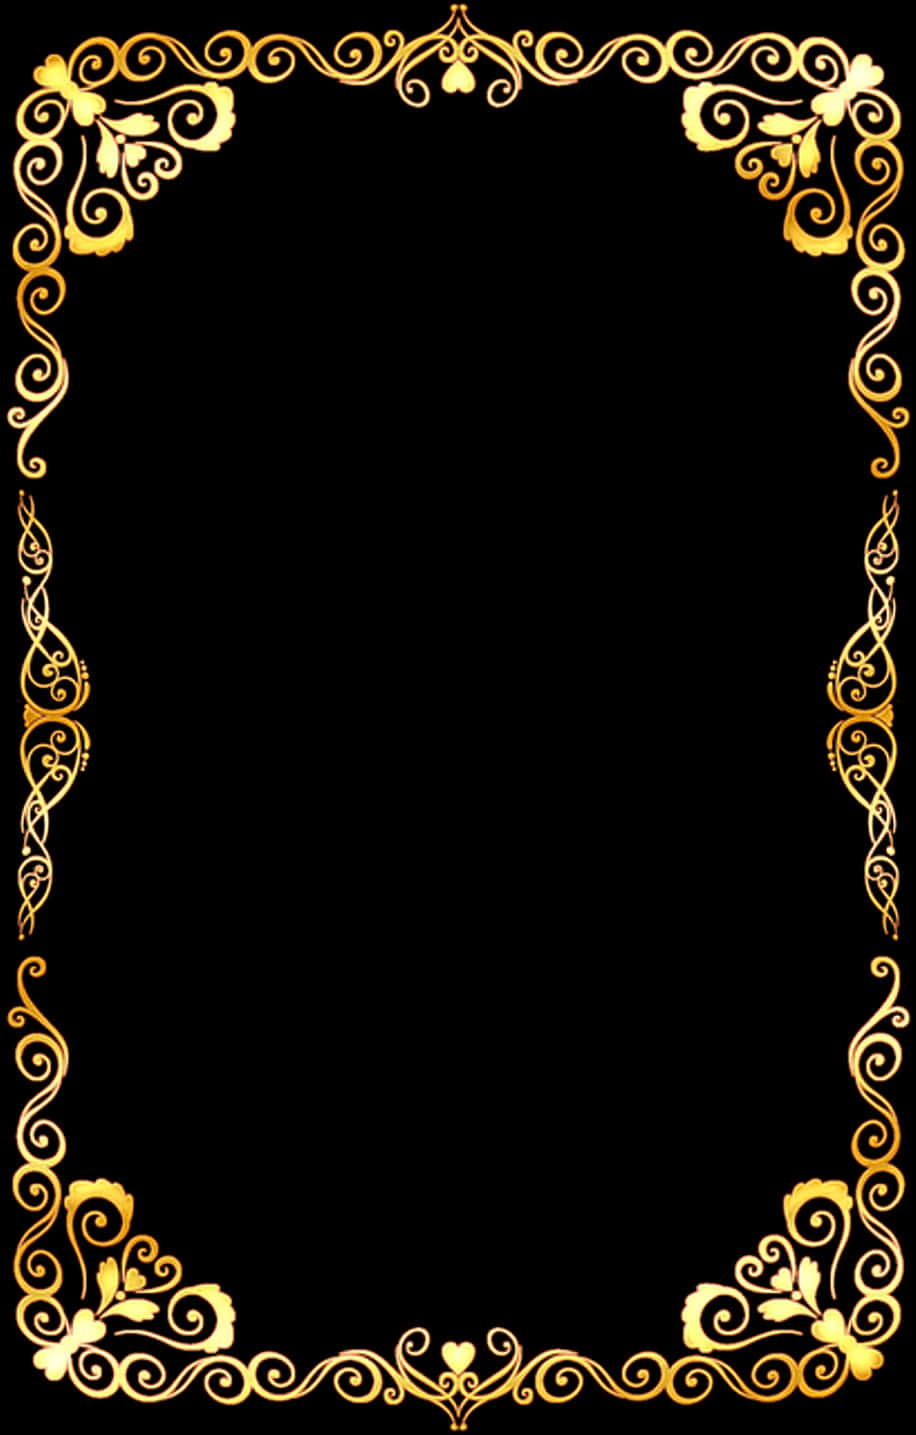 #adornment #adorno #moldura #quadro #borda #gold #golden - Border Design Transparent Background, Hd Png Download